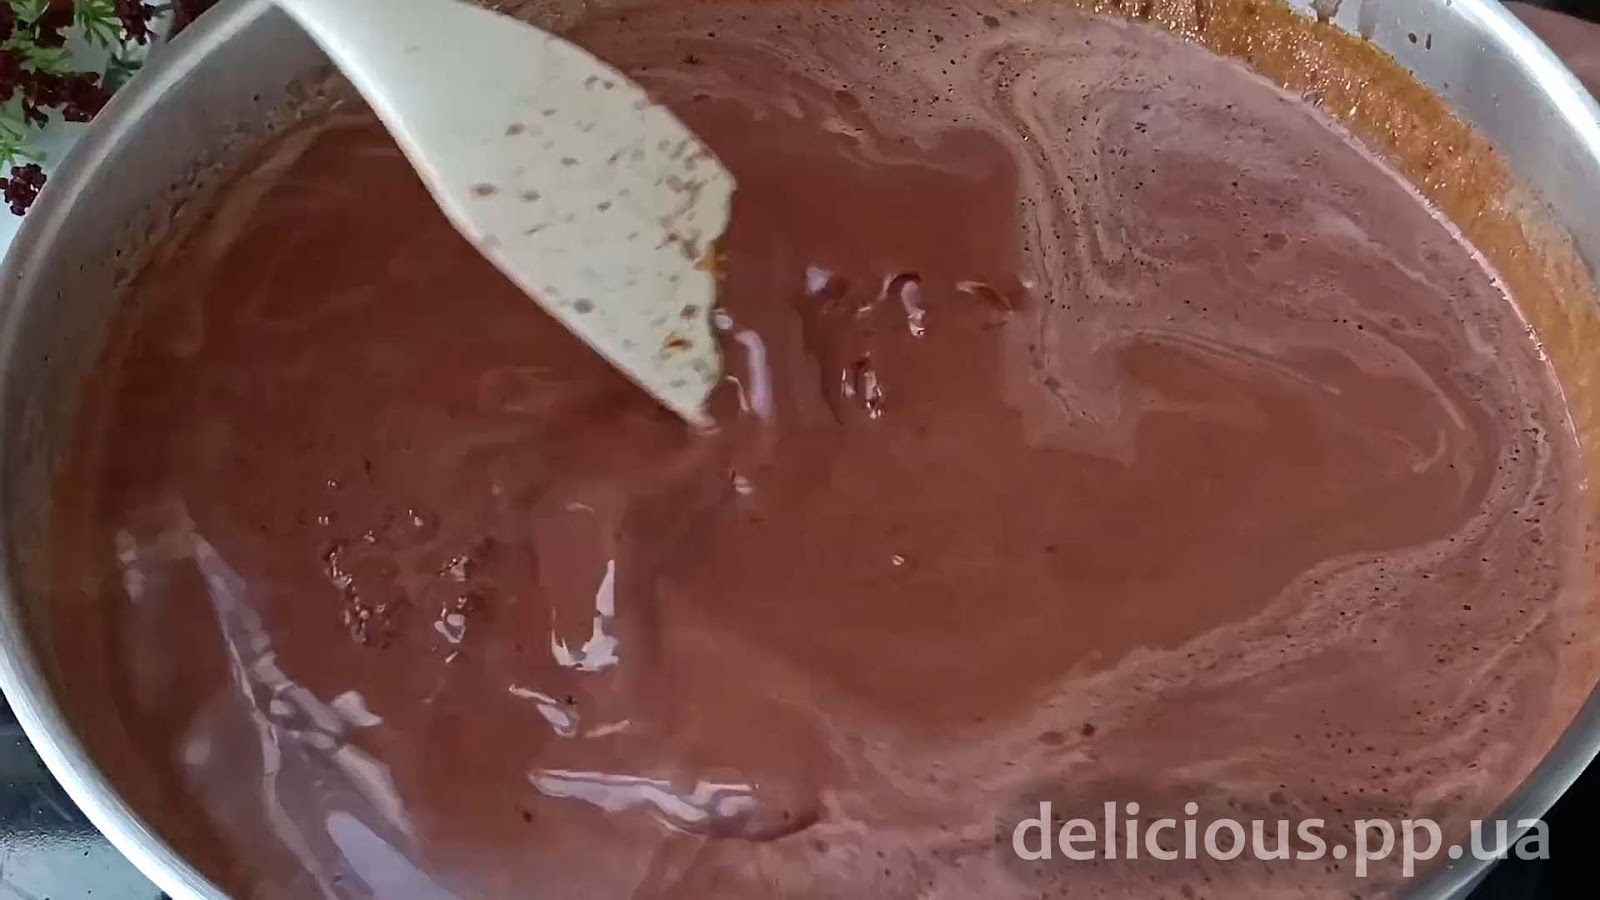 Фото приготовления рецепта: «Идеальный десерт без выпечки — шоколадный Торт - Пудинг за 15 минут» - шаг №5